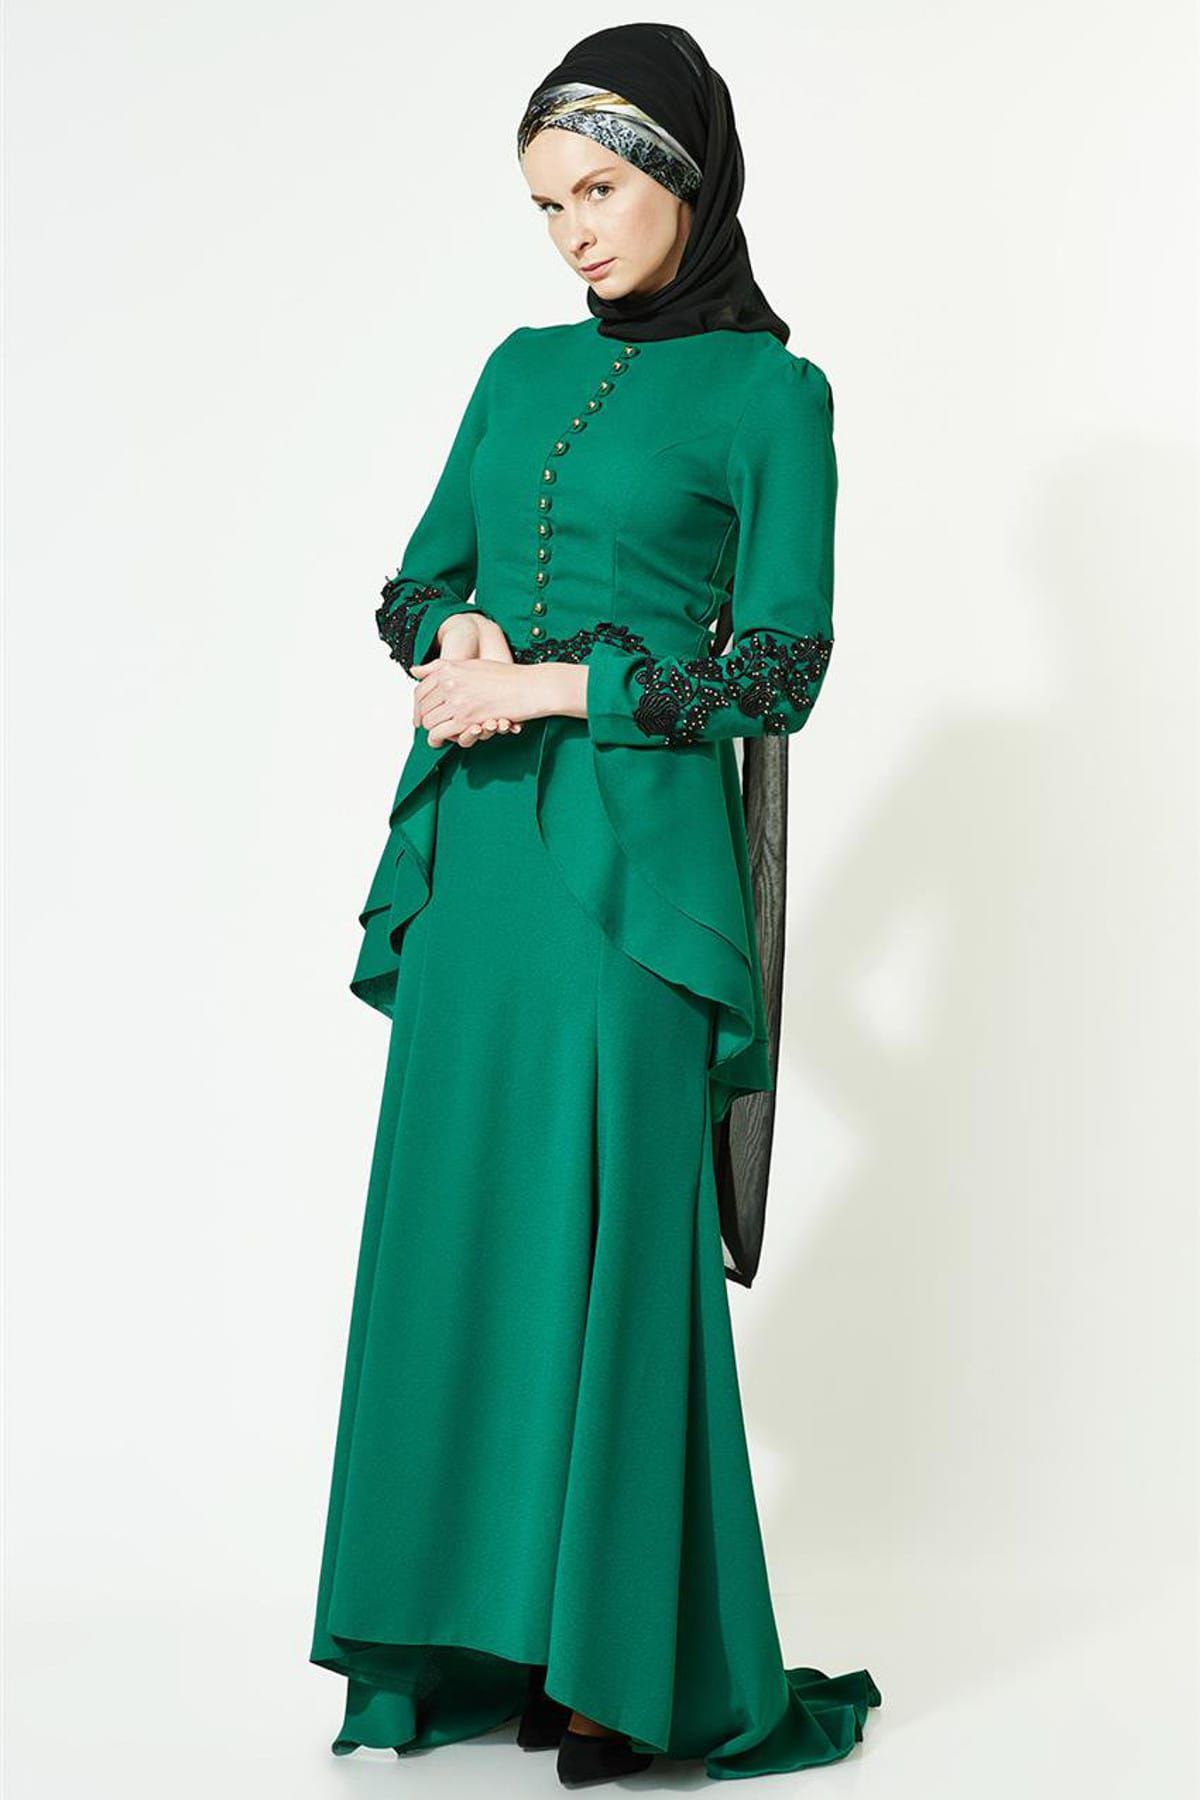 LADYNUR Kadın Abiye Elbise Yeşil 3008-21